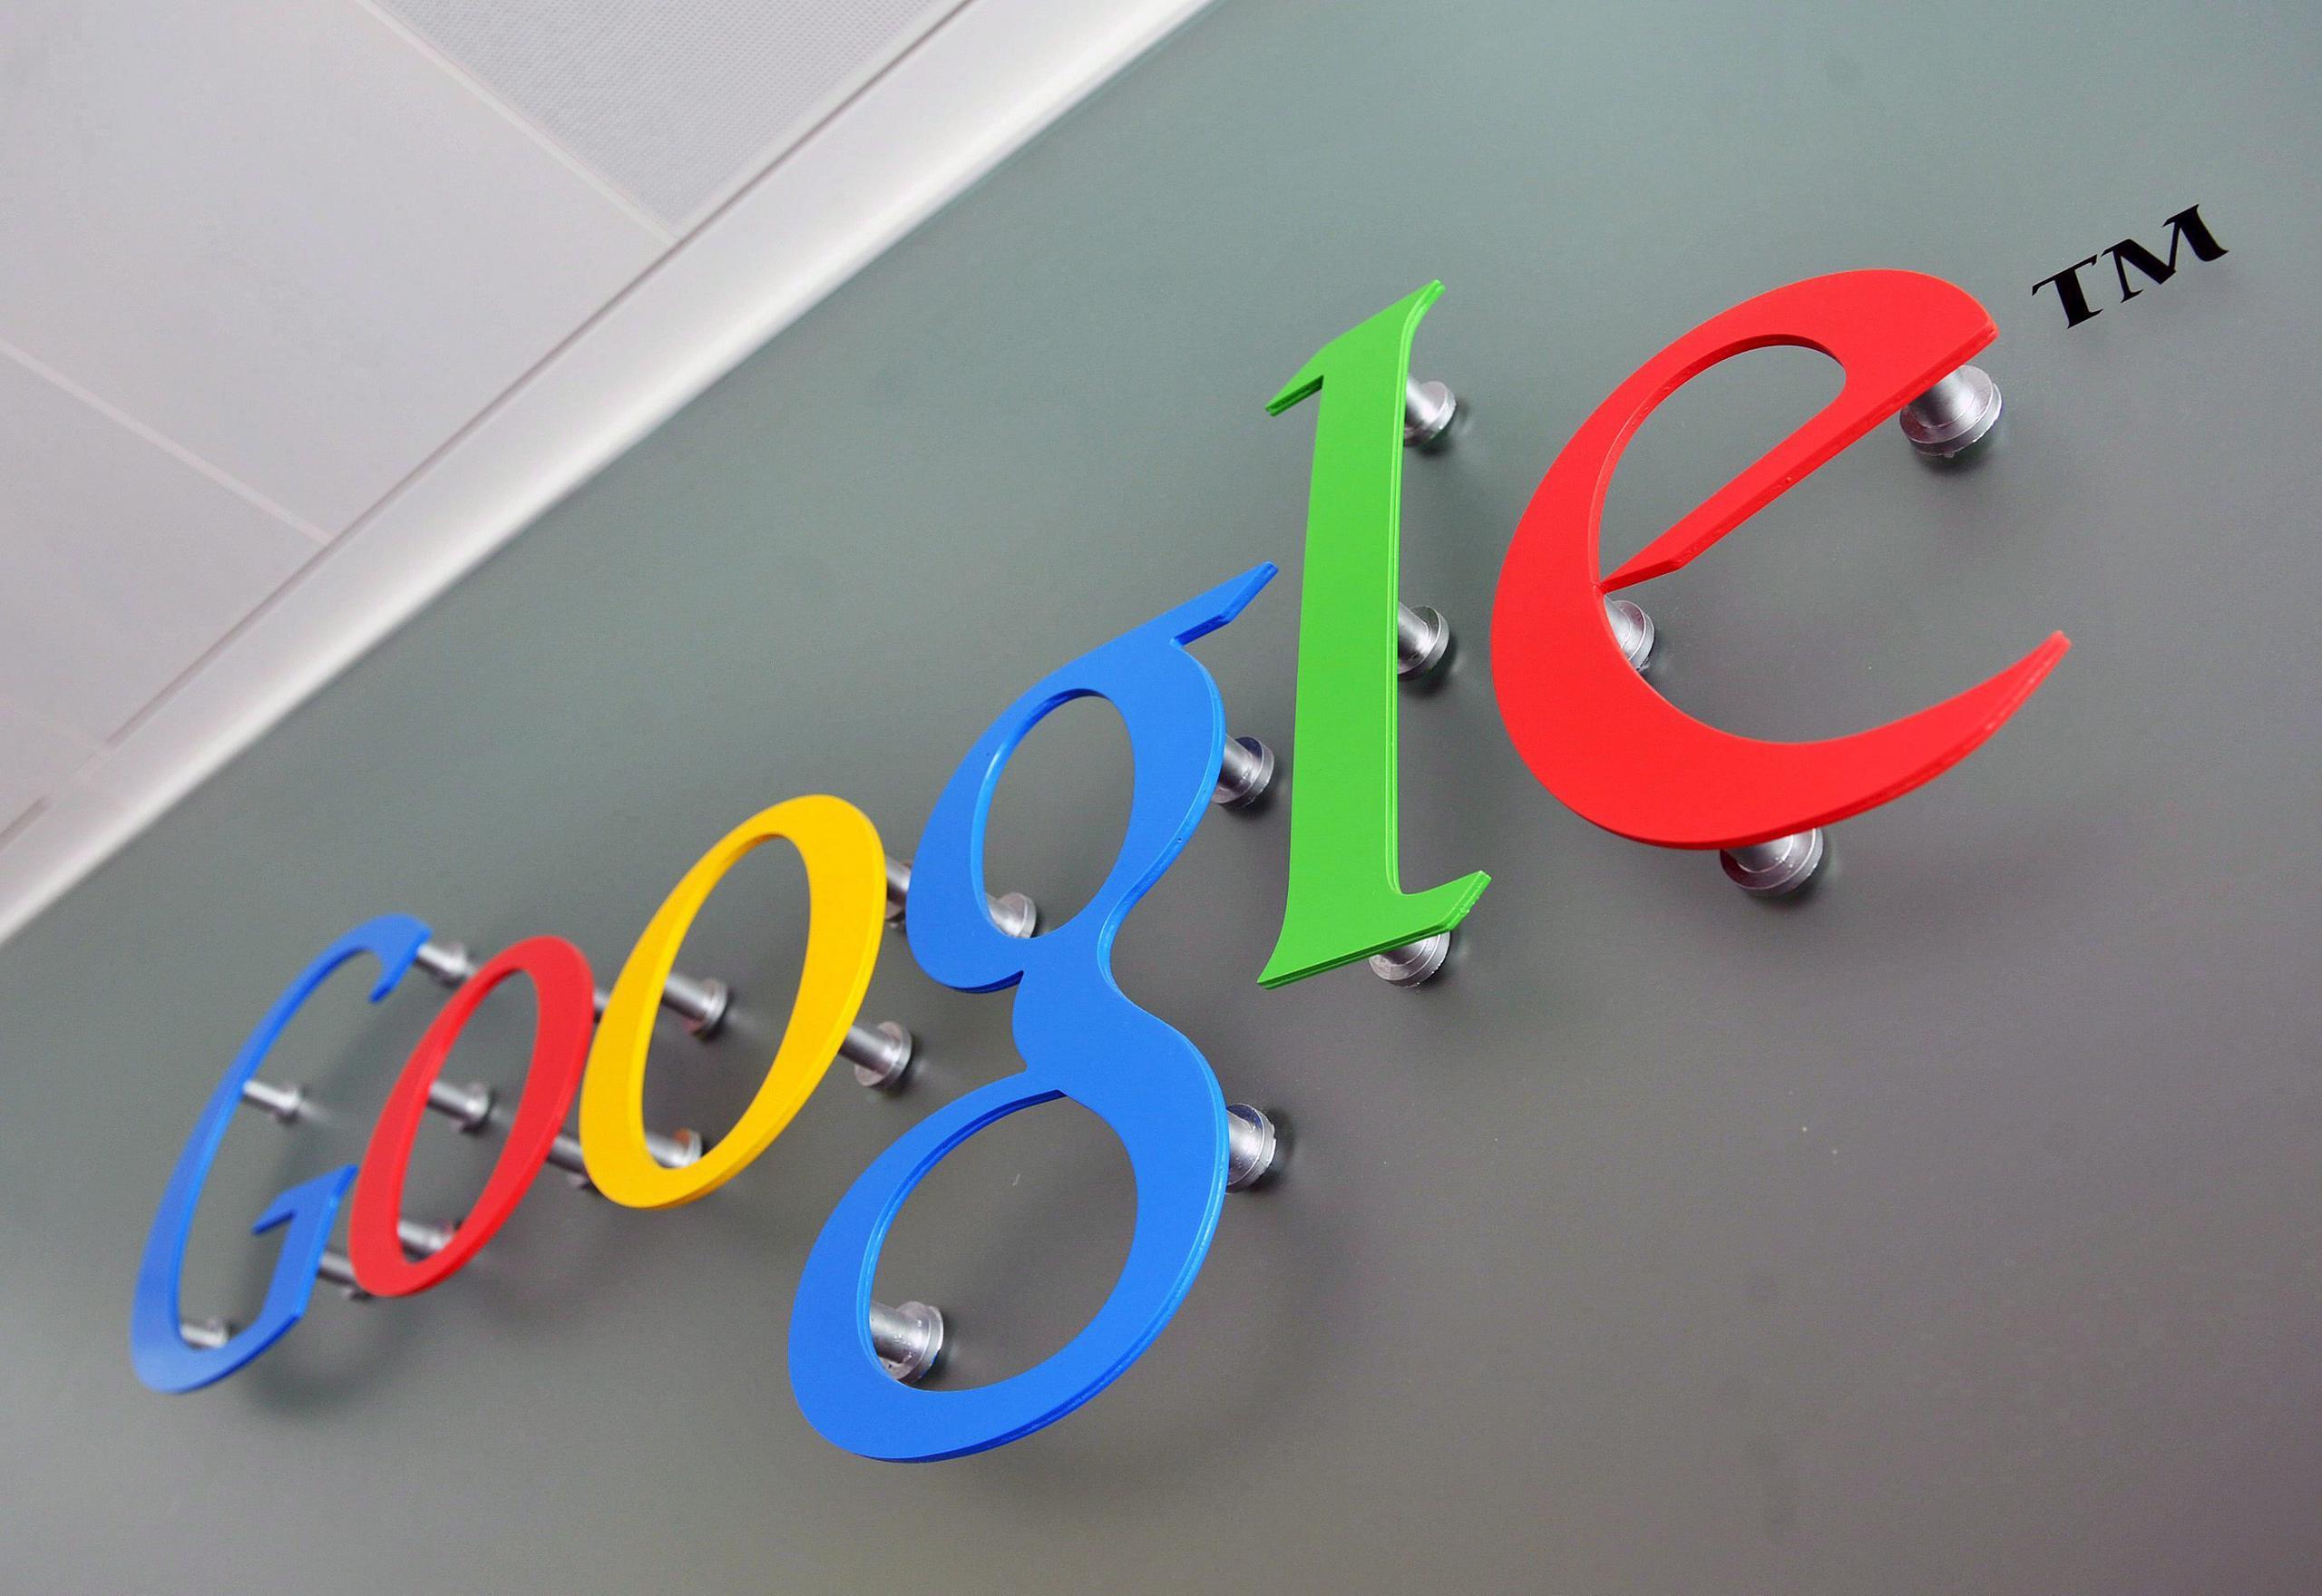 Actas de la corte indican que 11 estados se sumaron a la demanda contra Google.